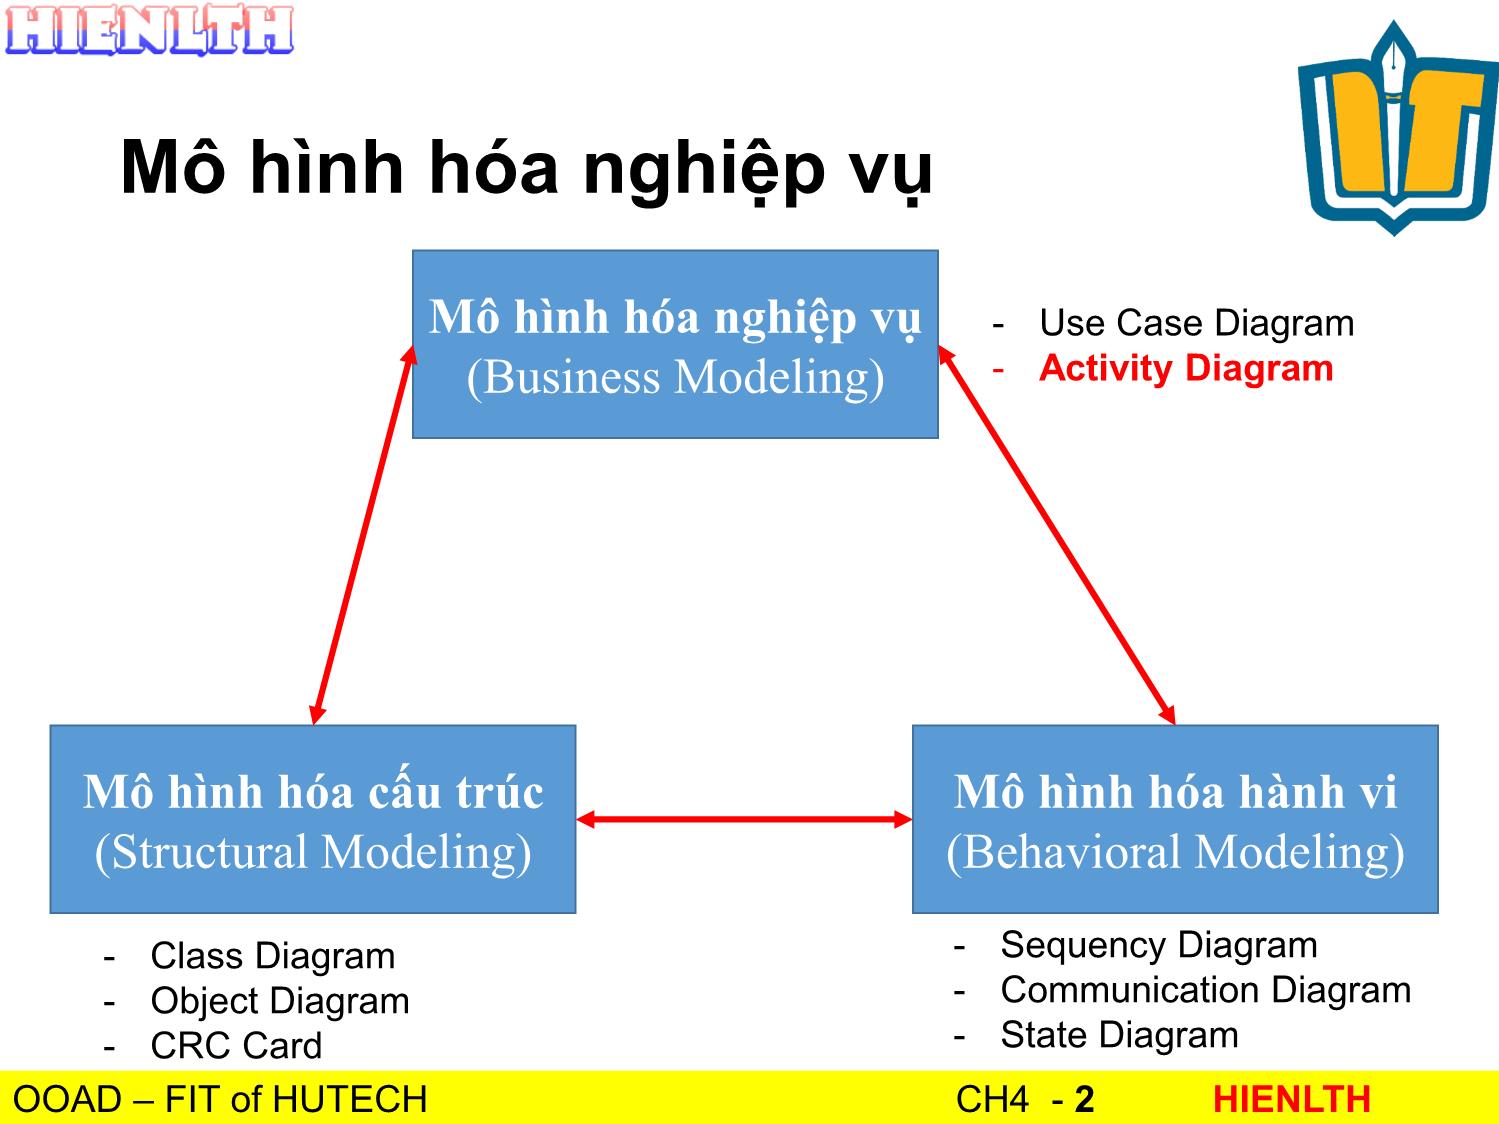 Bài giảng Phân tích thiết kế hướng đối tượng - Bài 4: Activity Diagram - Lương Trần Hy Hiến trang 2